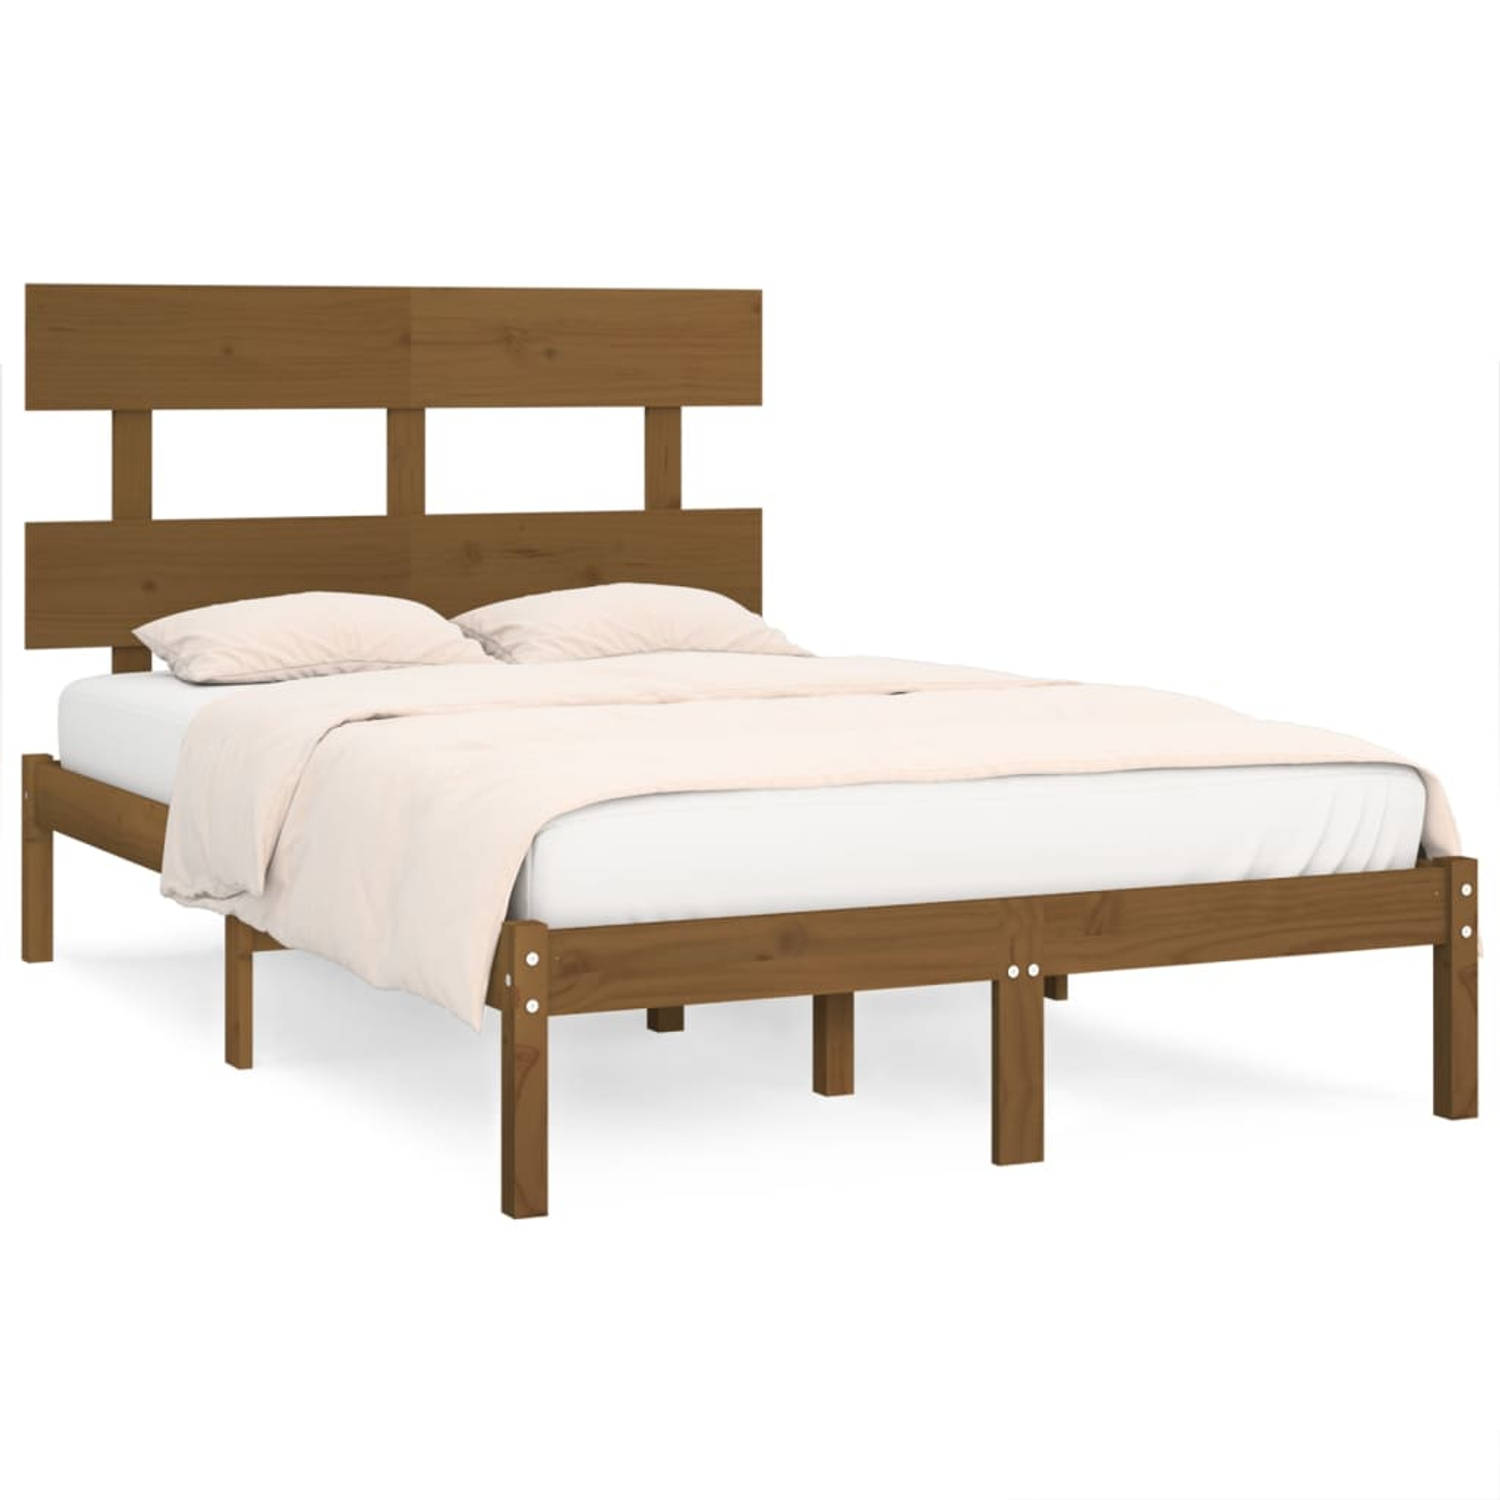 The Living Store Bedframe massief hout honingbruin 140x200 cm - Bedframe - Bedframes - Tweepersoonsbed - Bed - Bedombouw - Dubbel Bed - Frame - Bed Frame - Ledikant - Bedframe Met